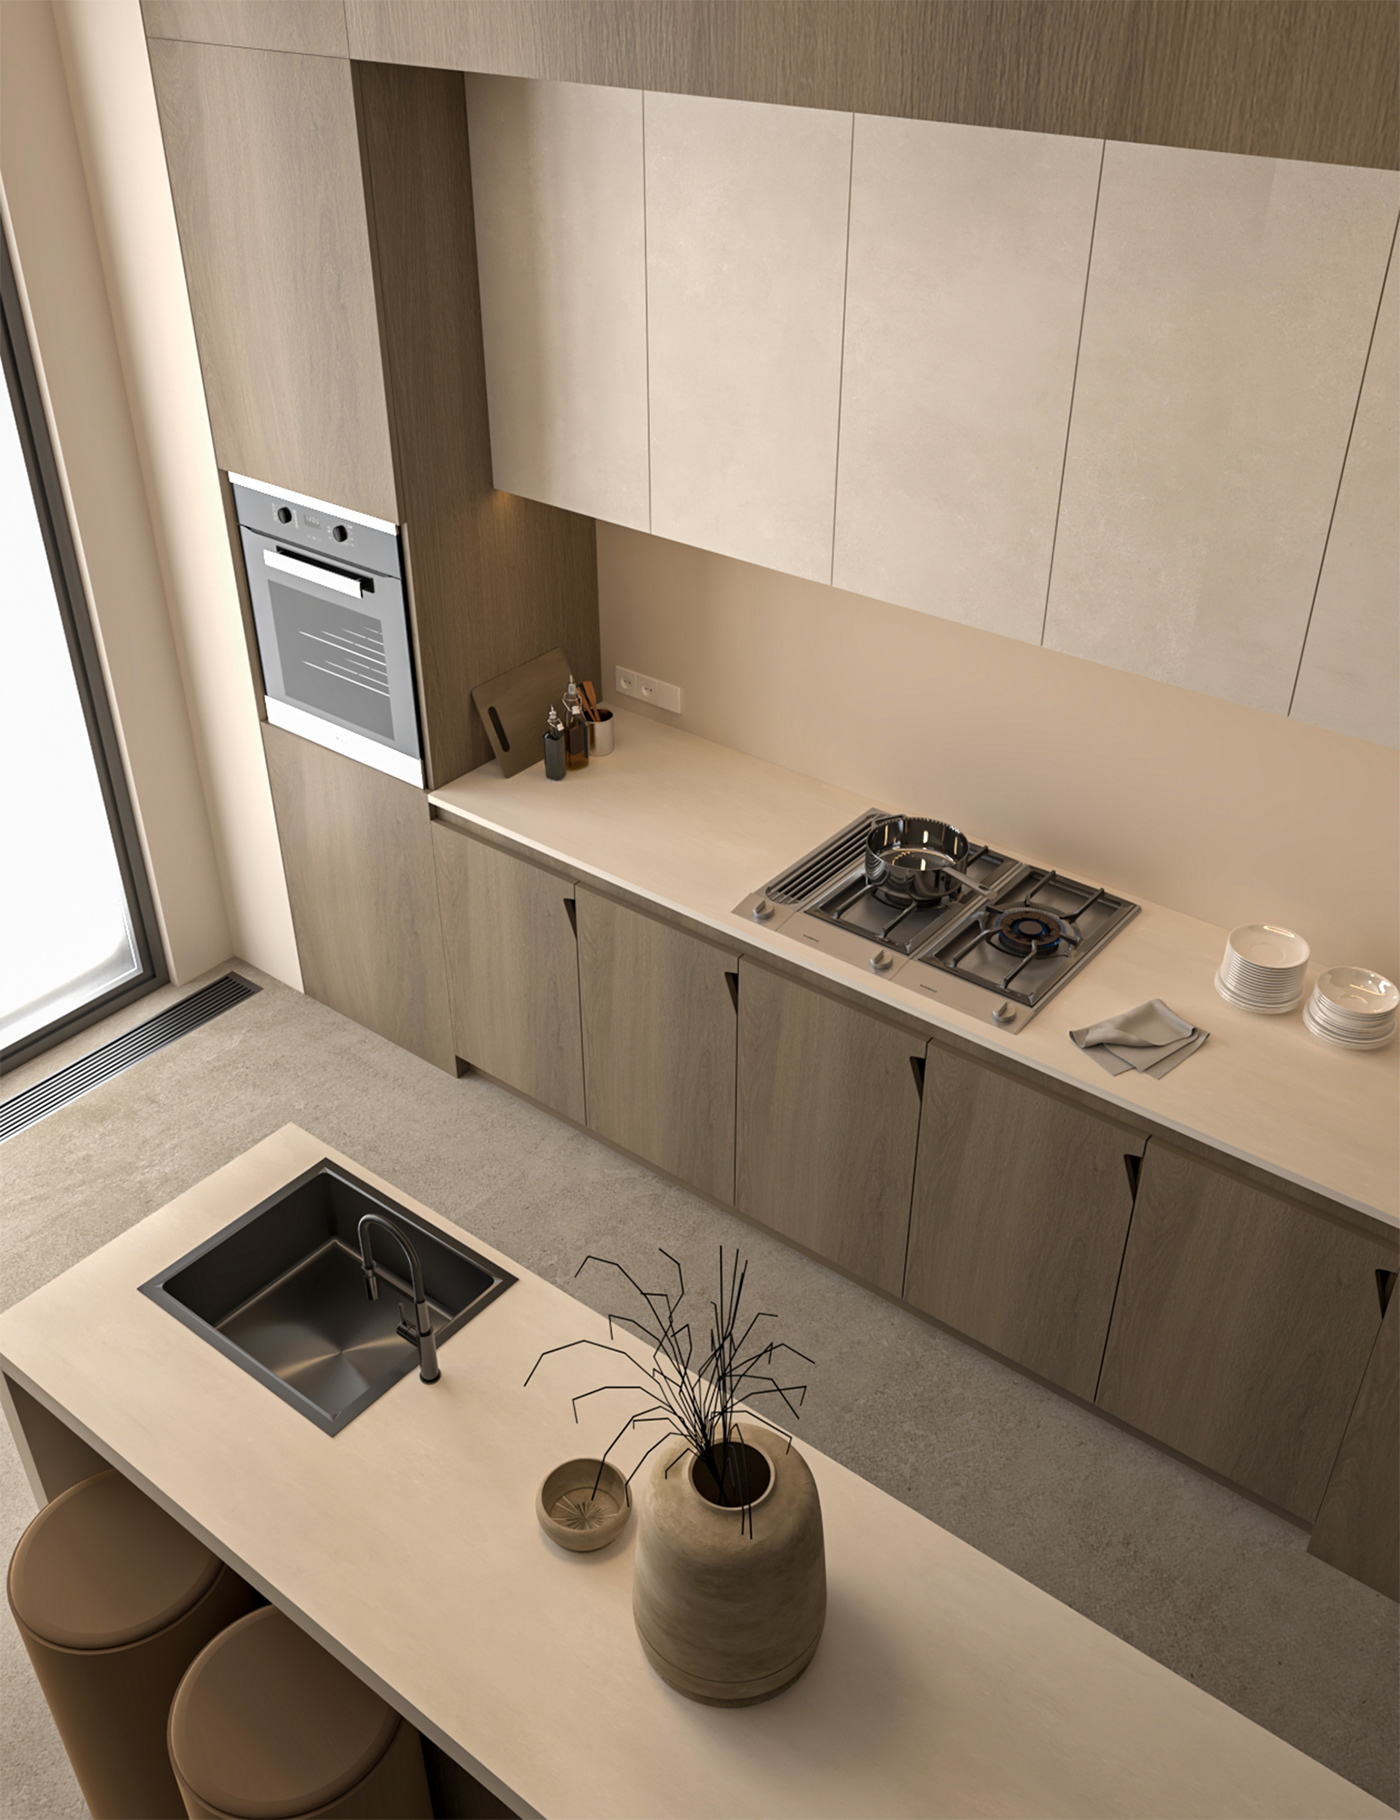 TAP kitchen interior design  visualization 3ds max architecture mood